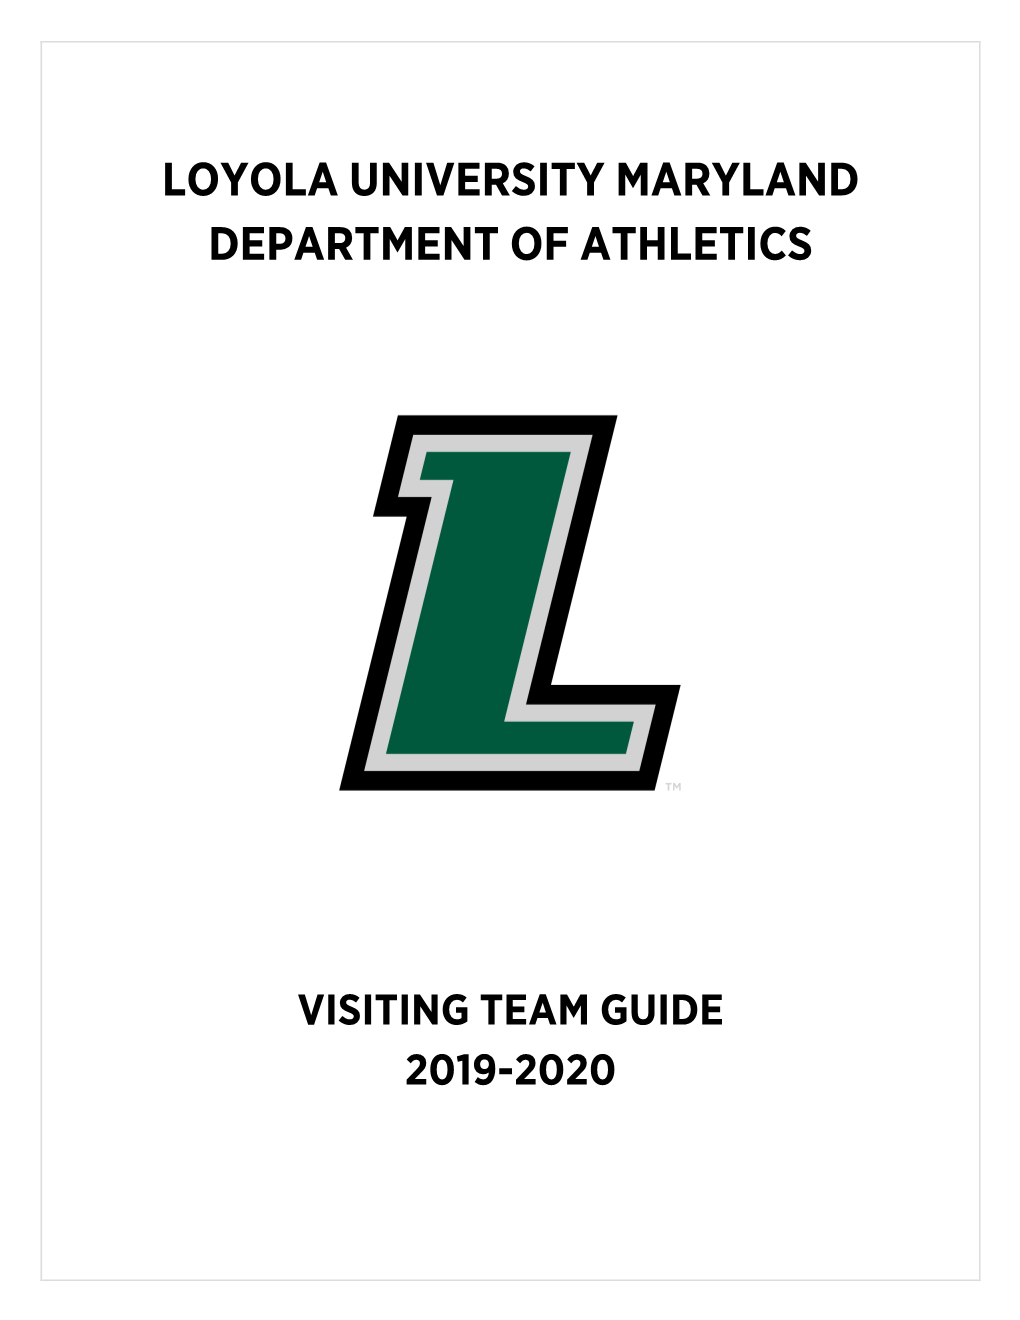 Loyola University Maryland Department of Athletics